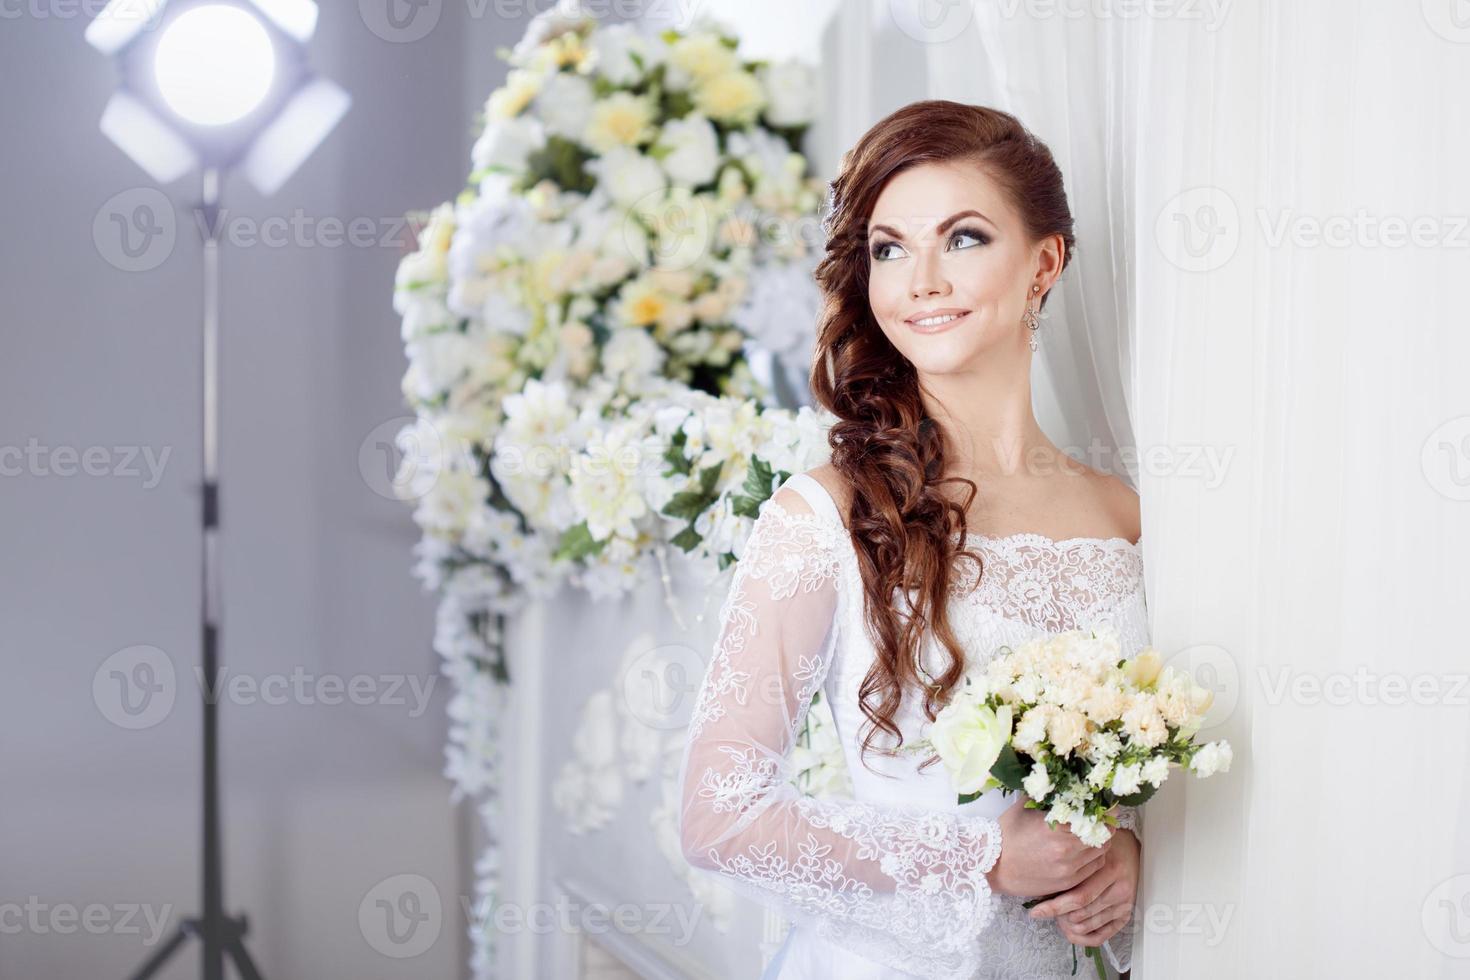 la novia en el estudio fotográfico, fotografía de bodas foto